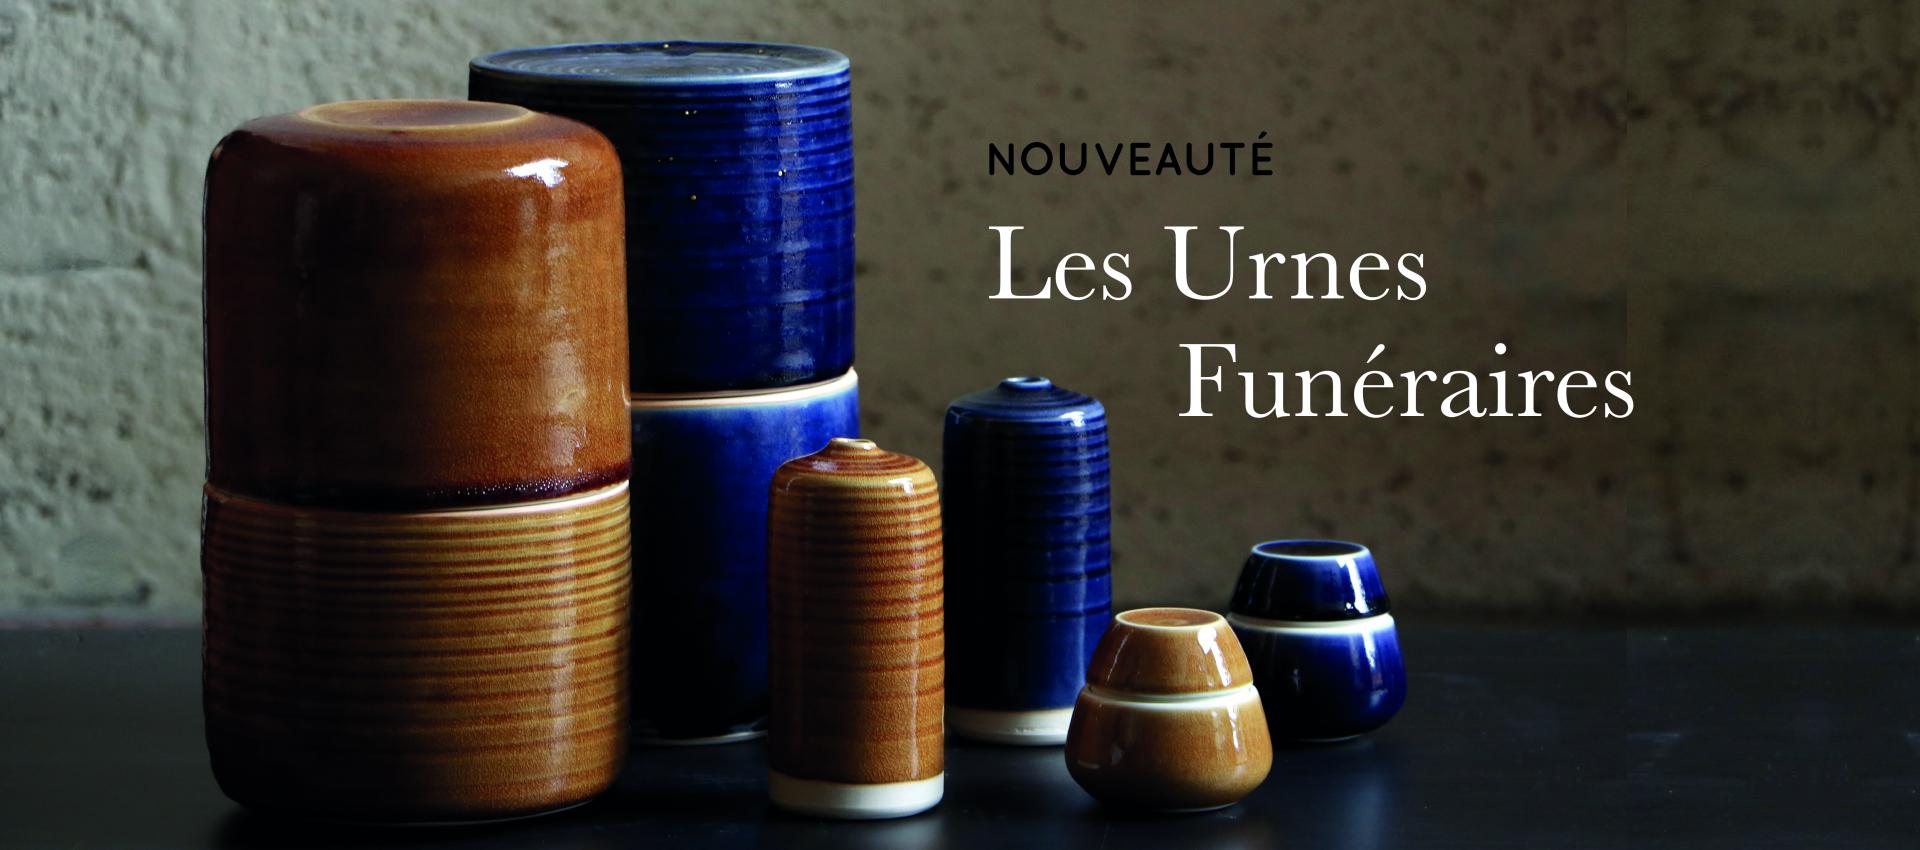 Urnes funéraires artisanales céramique Annecy